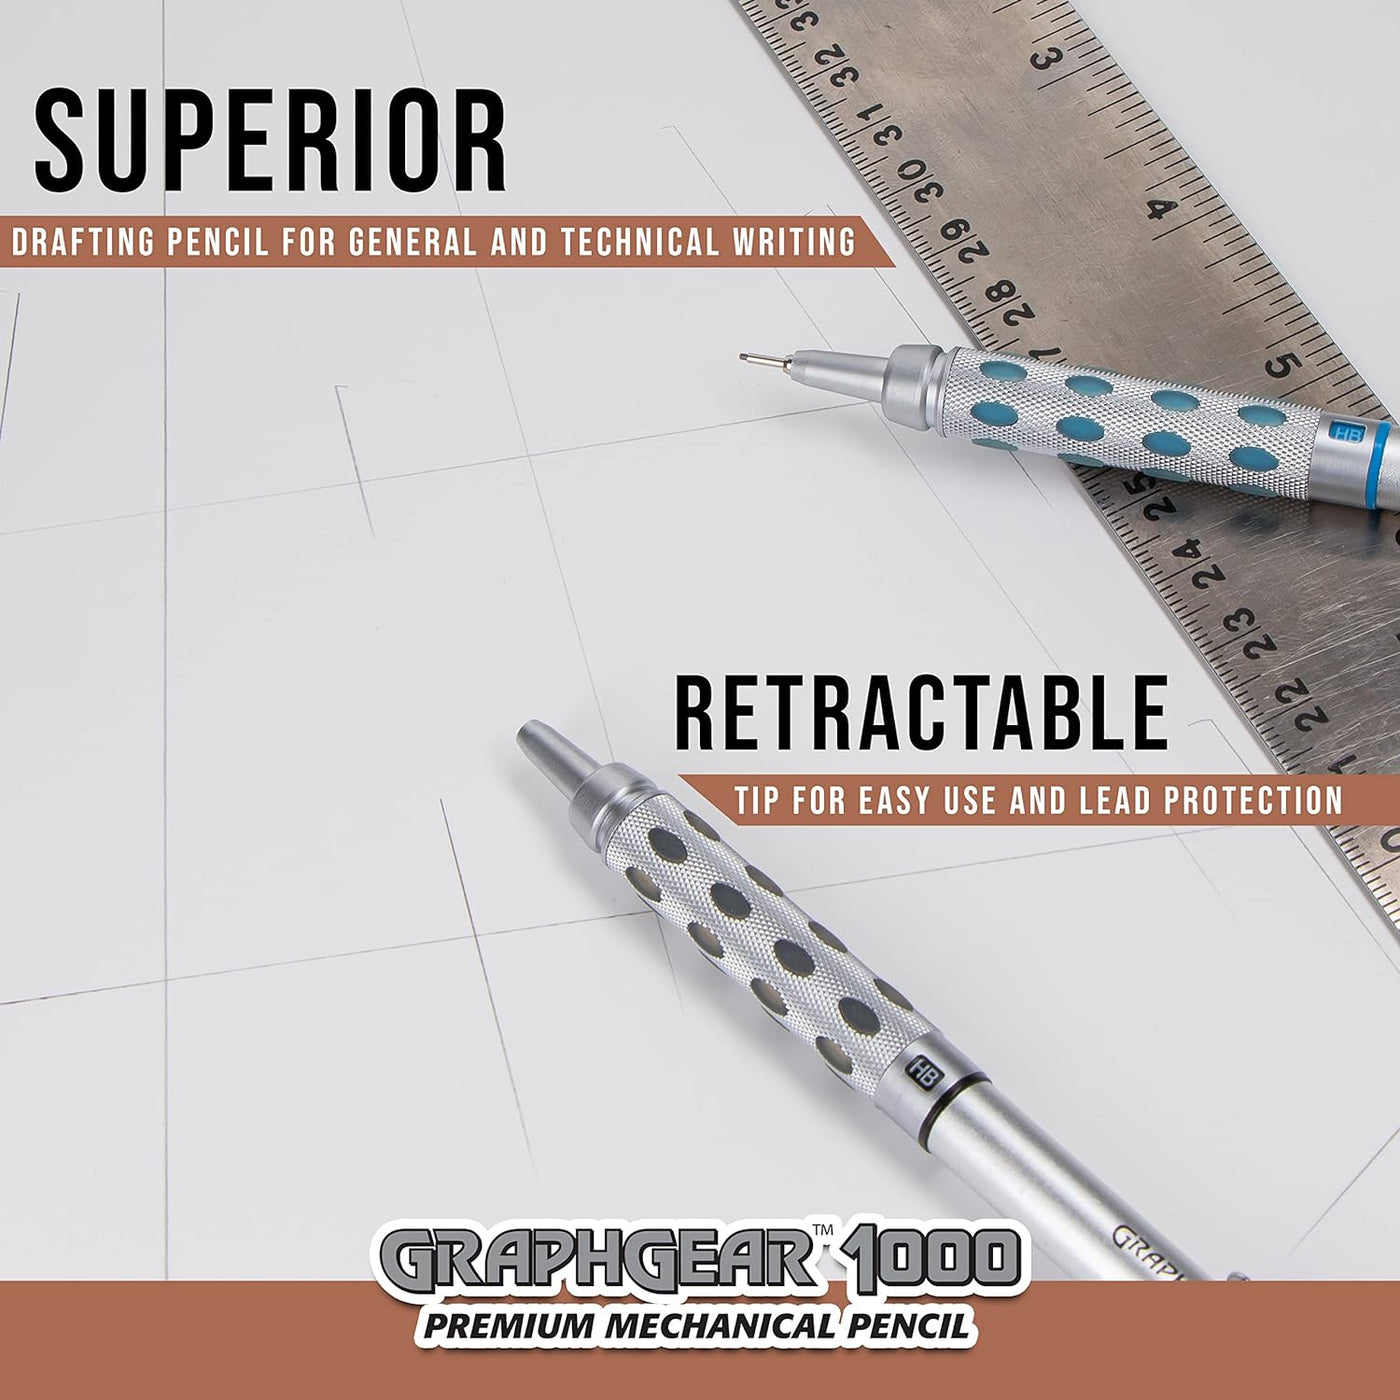 Pentel GraphGear 1000 Drafting Pencil - 0.5 mm